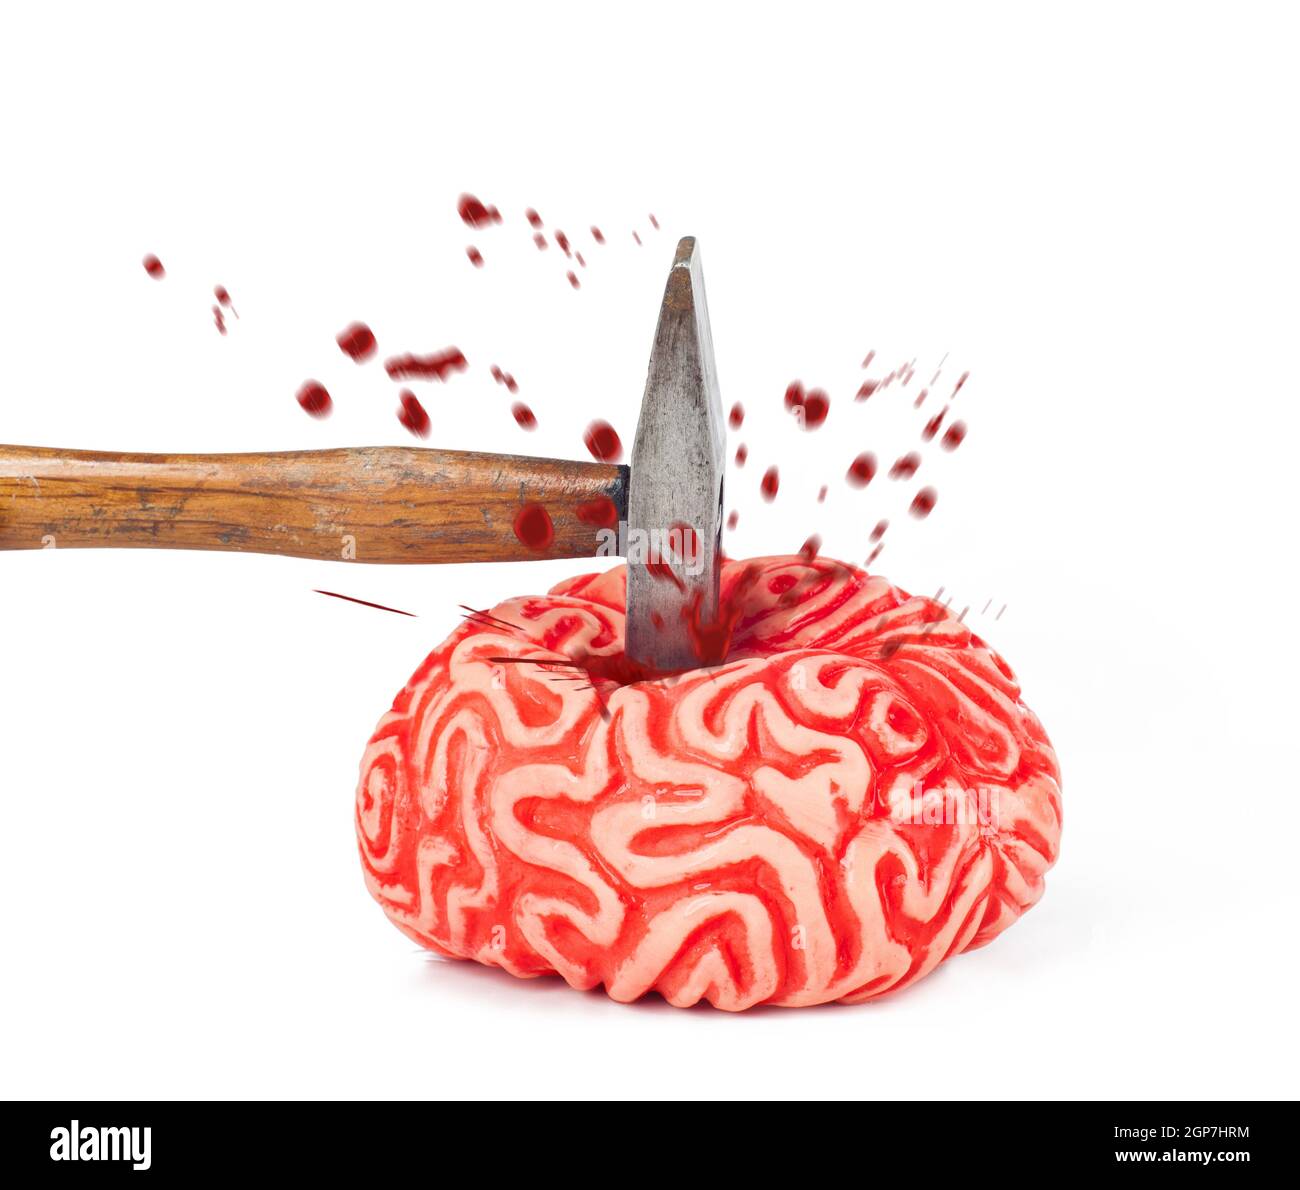 Cervello umano gomma con colpo di martello e fuoriuscita di sangue isolati su sfondo bianco. Foto Stock